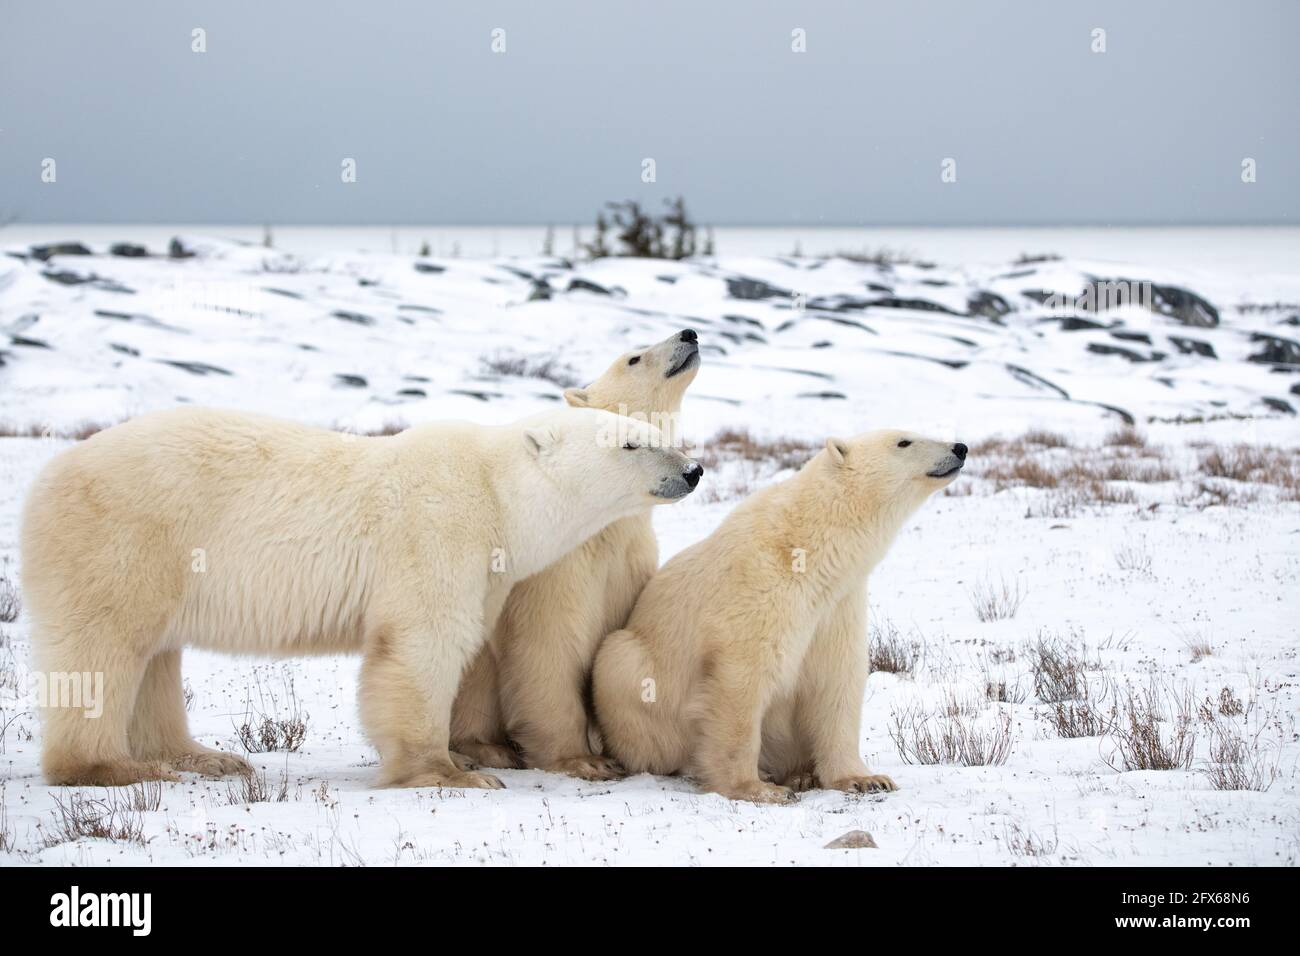 Eine Mutter Eisbär und zwei junge Jungtiere, die auf der Tundra-Landschaft mit weißem Schnee und Büschen sitzen. Stockfoto